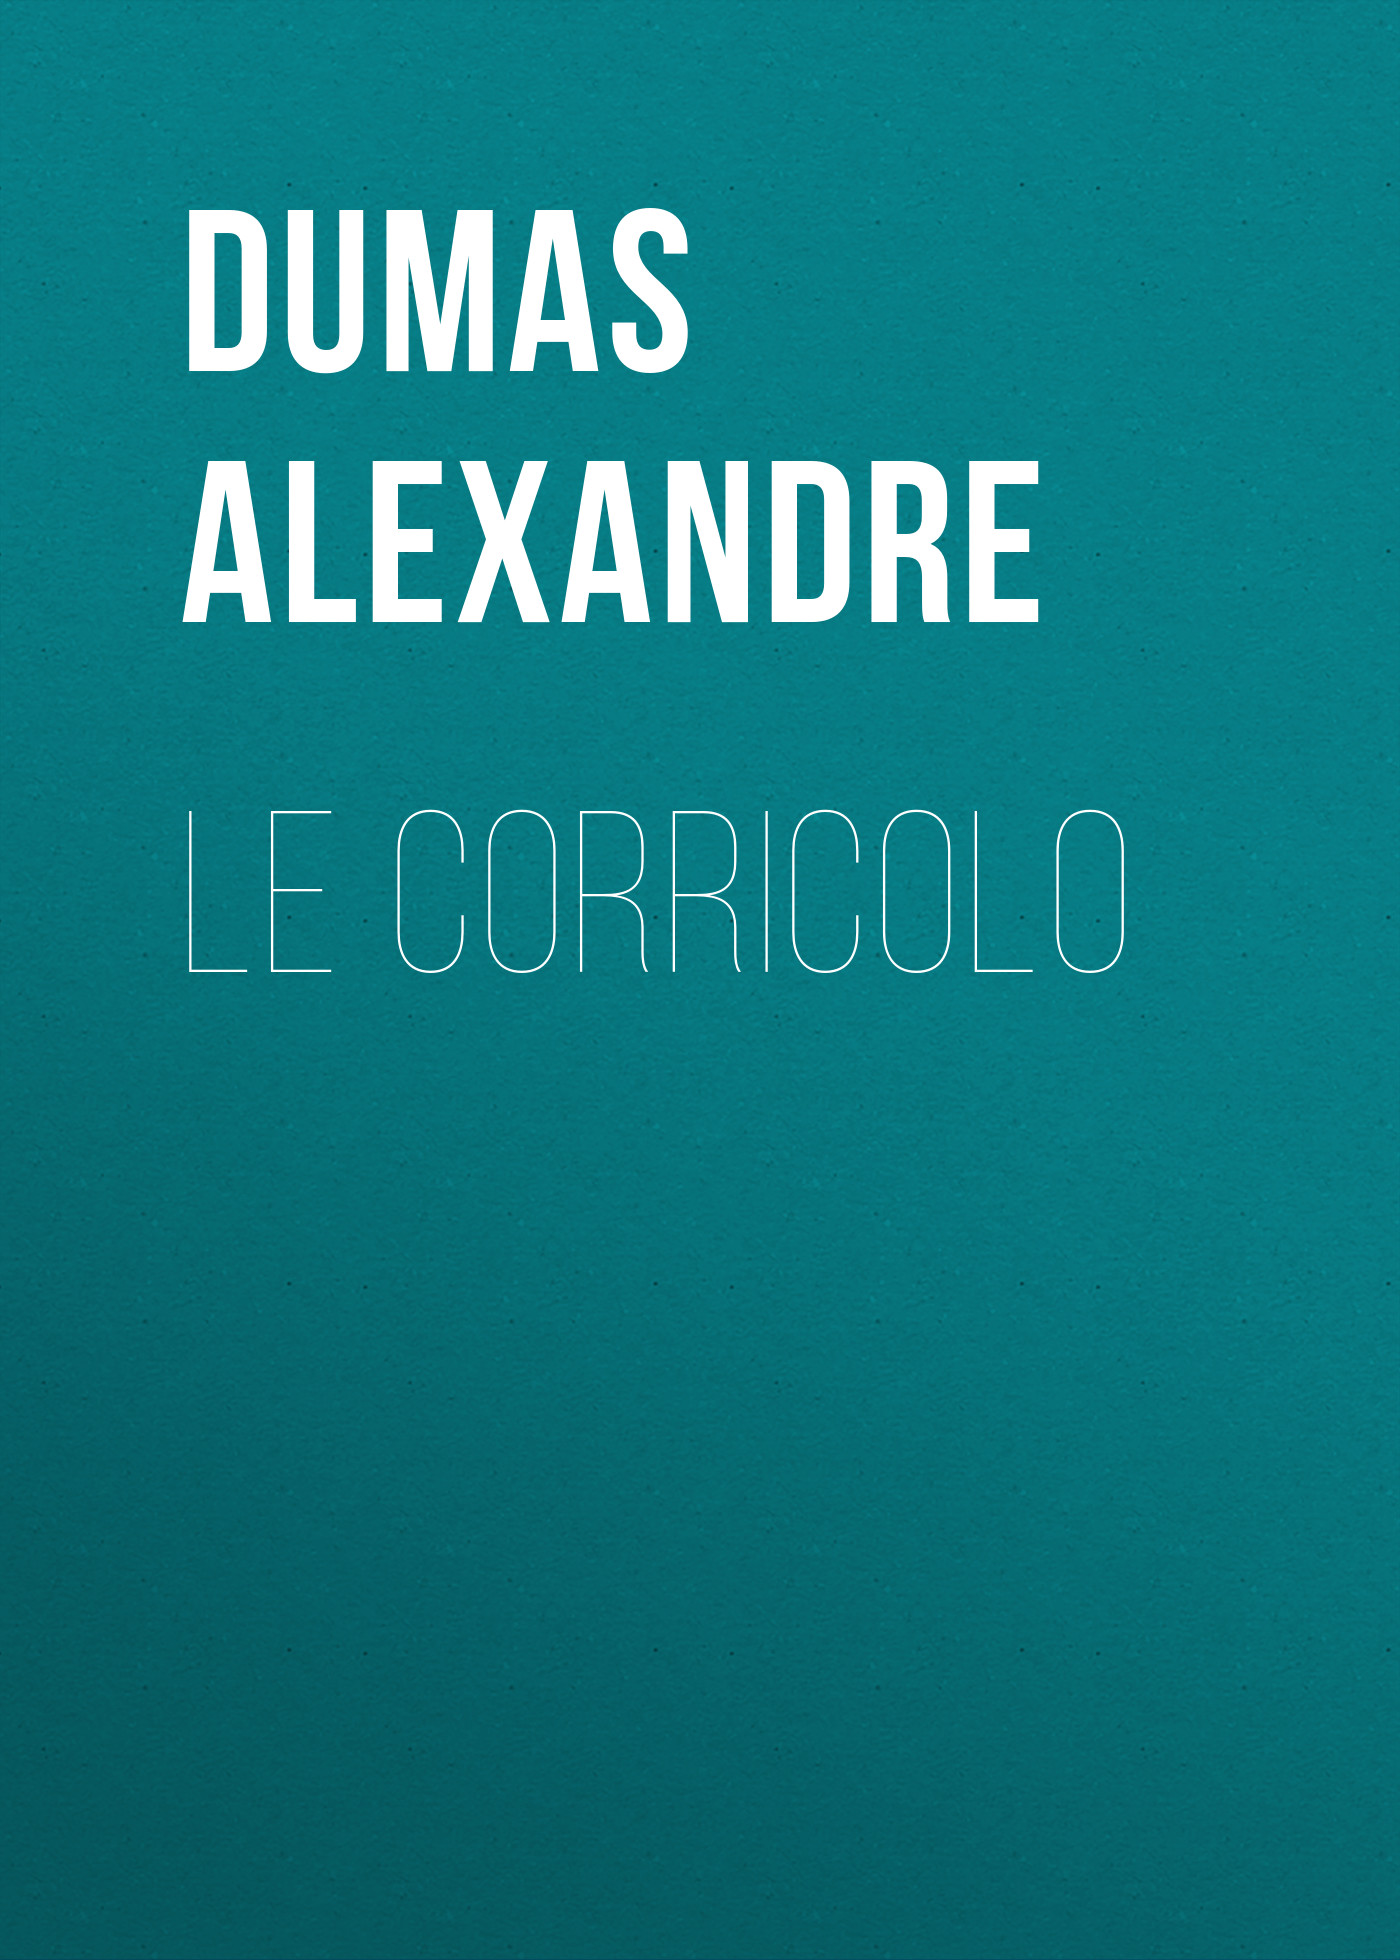 Книга Le corricolo из серии , созданная Alexandre Dumas, может относится к жанру Литература 19 века, Зарубежная старинная литература, Зарубежная классика. Стоимость электронной книги Le corricolo с идентификатором 25203527 составляет 0 руб.